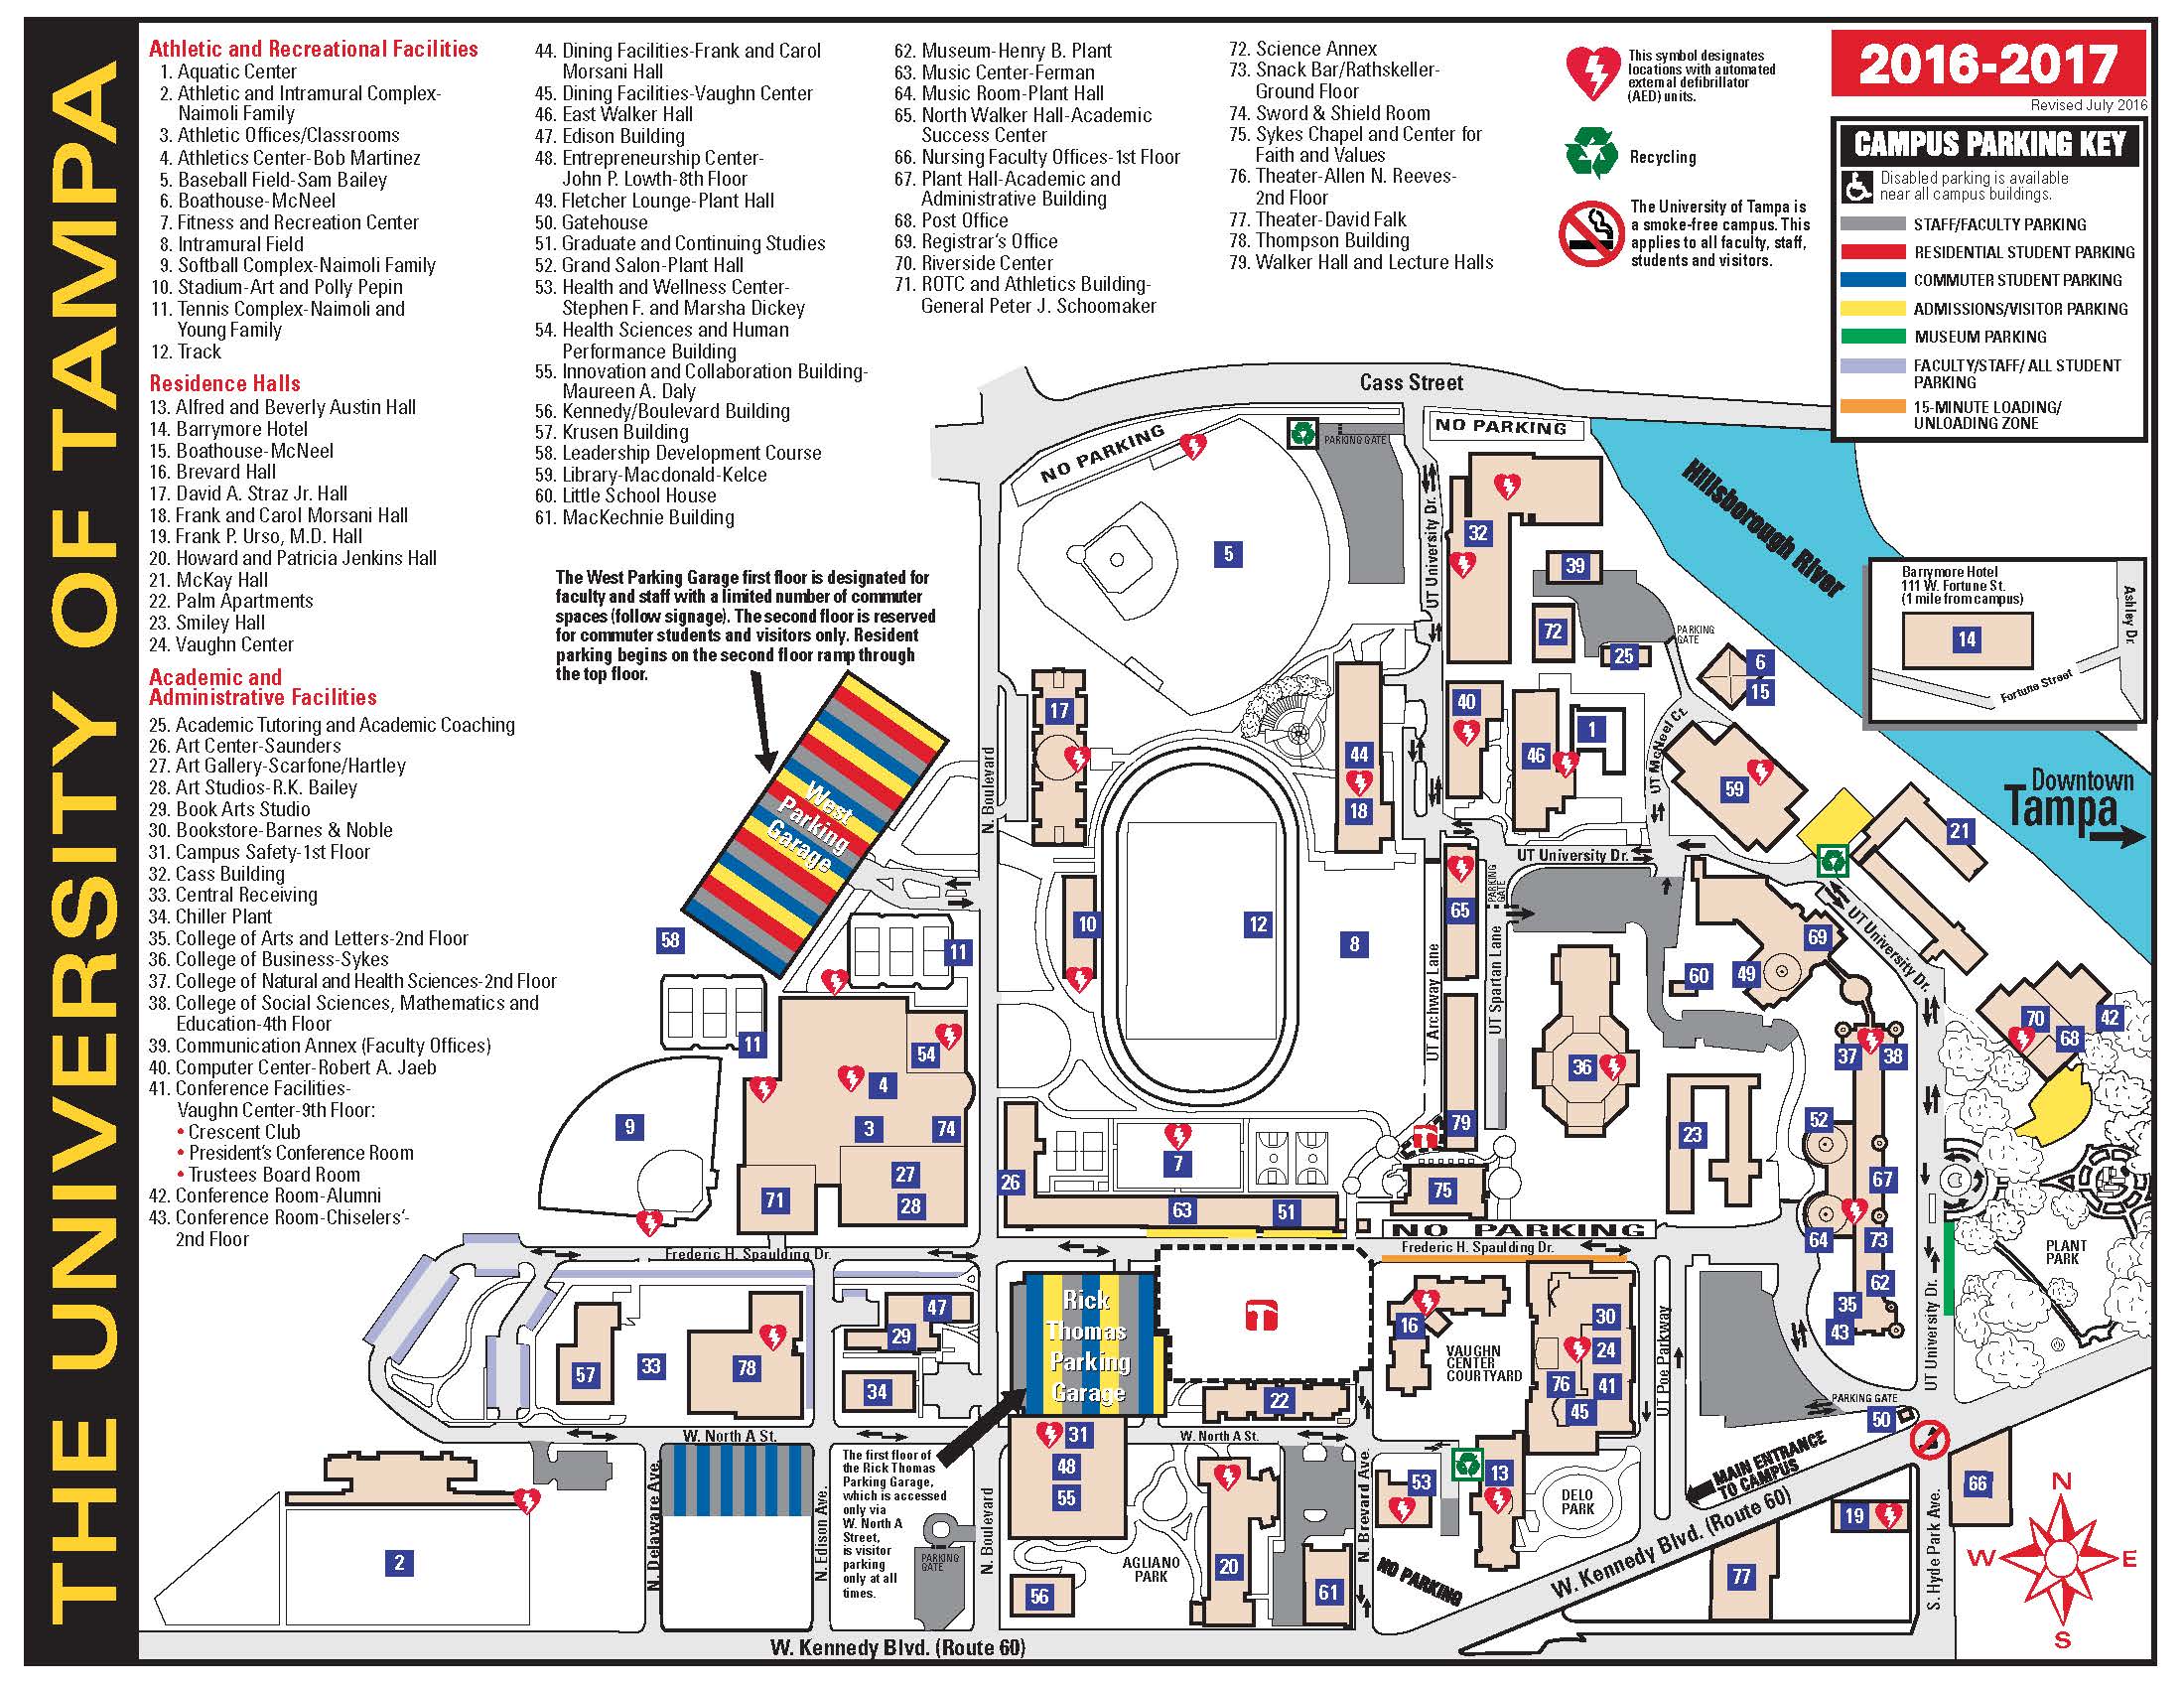 UT Campus Map